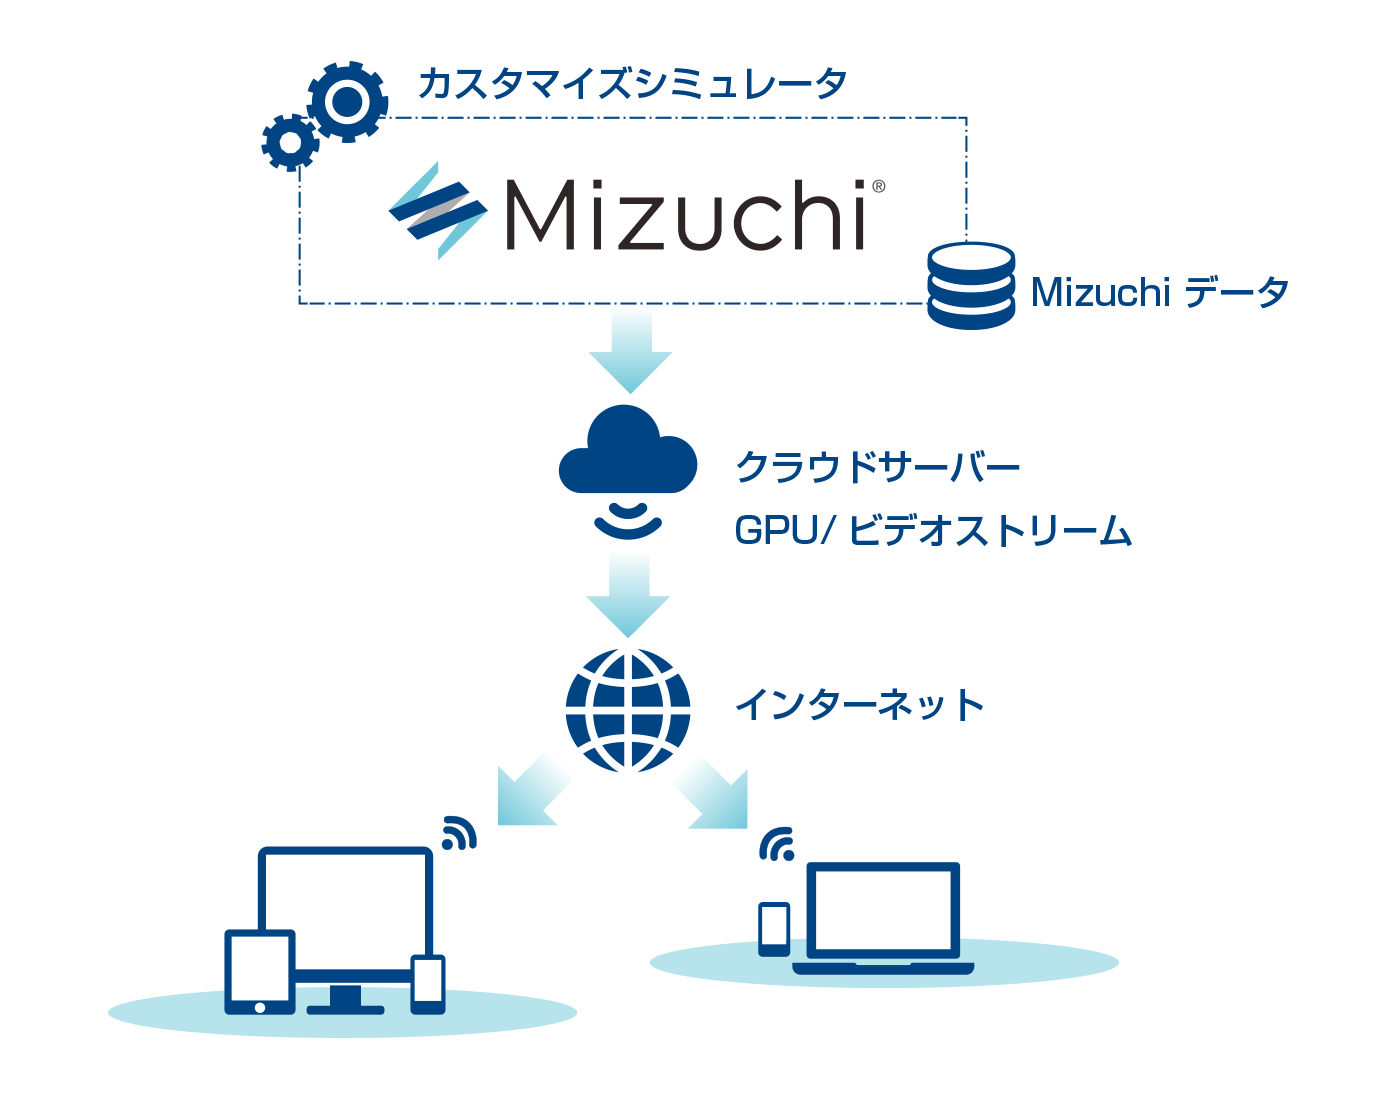 『Mizuchi』を含むクラウドレンダリングの構成イメージ